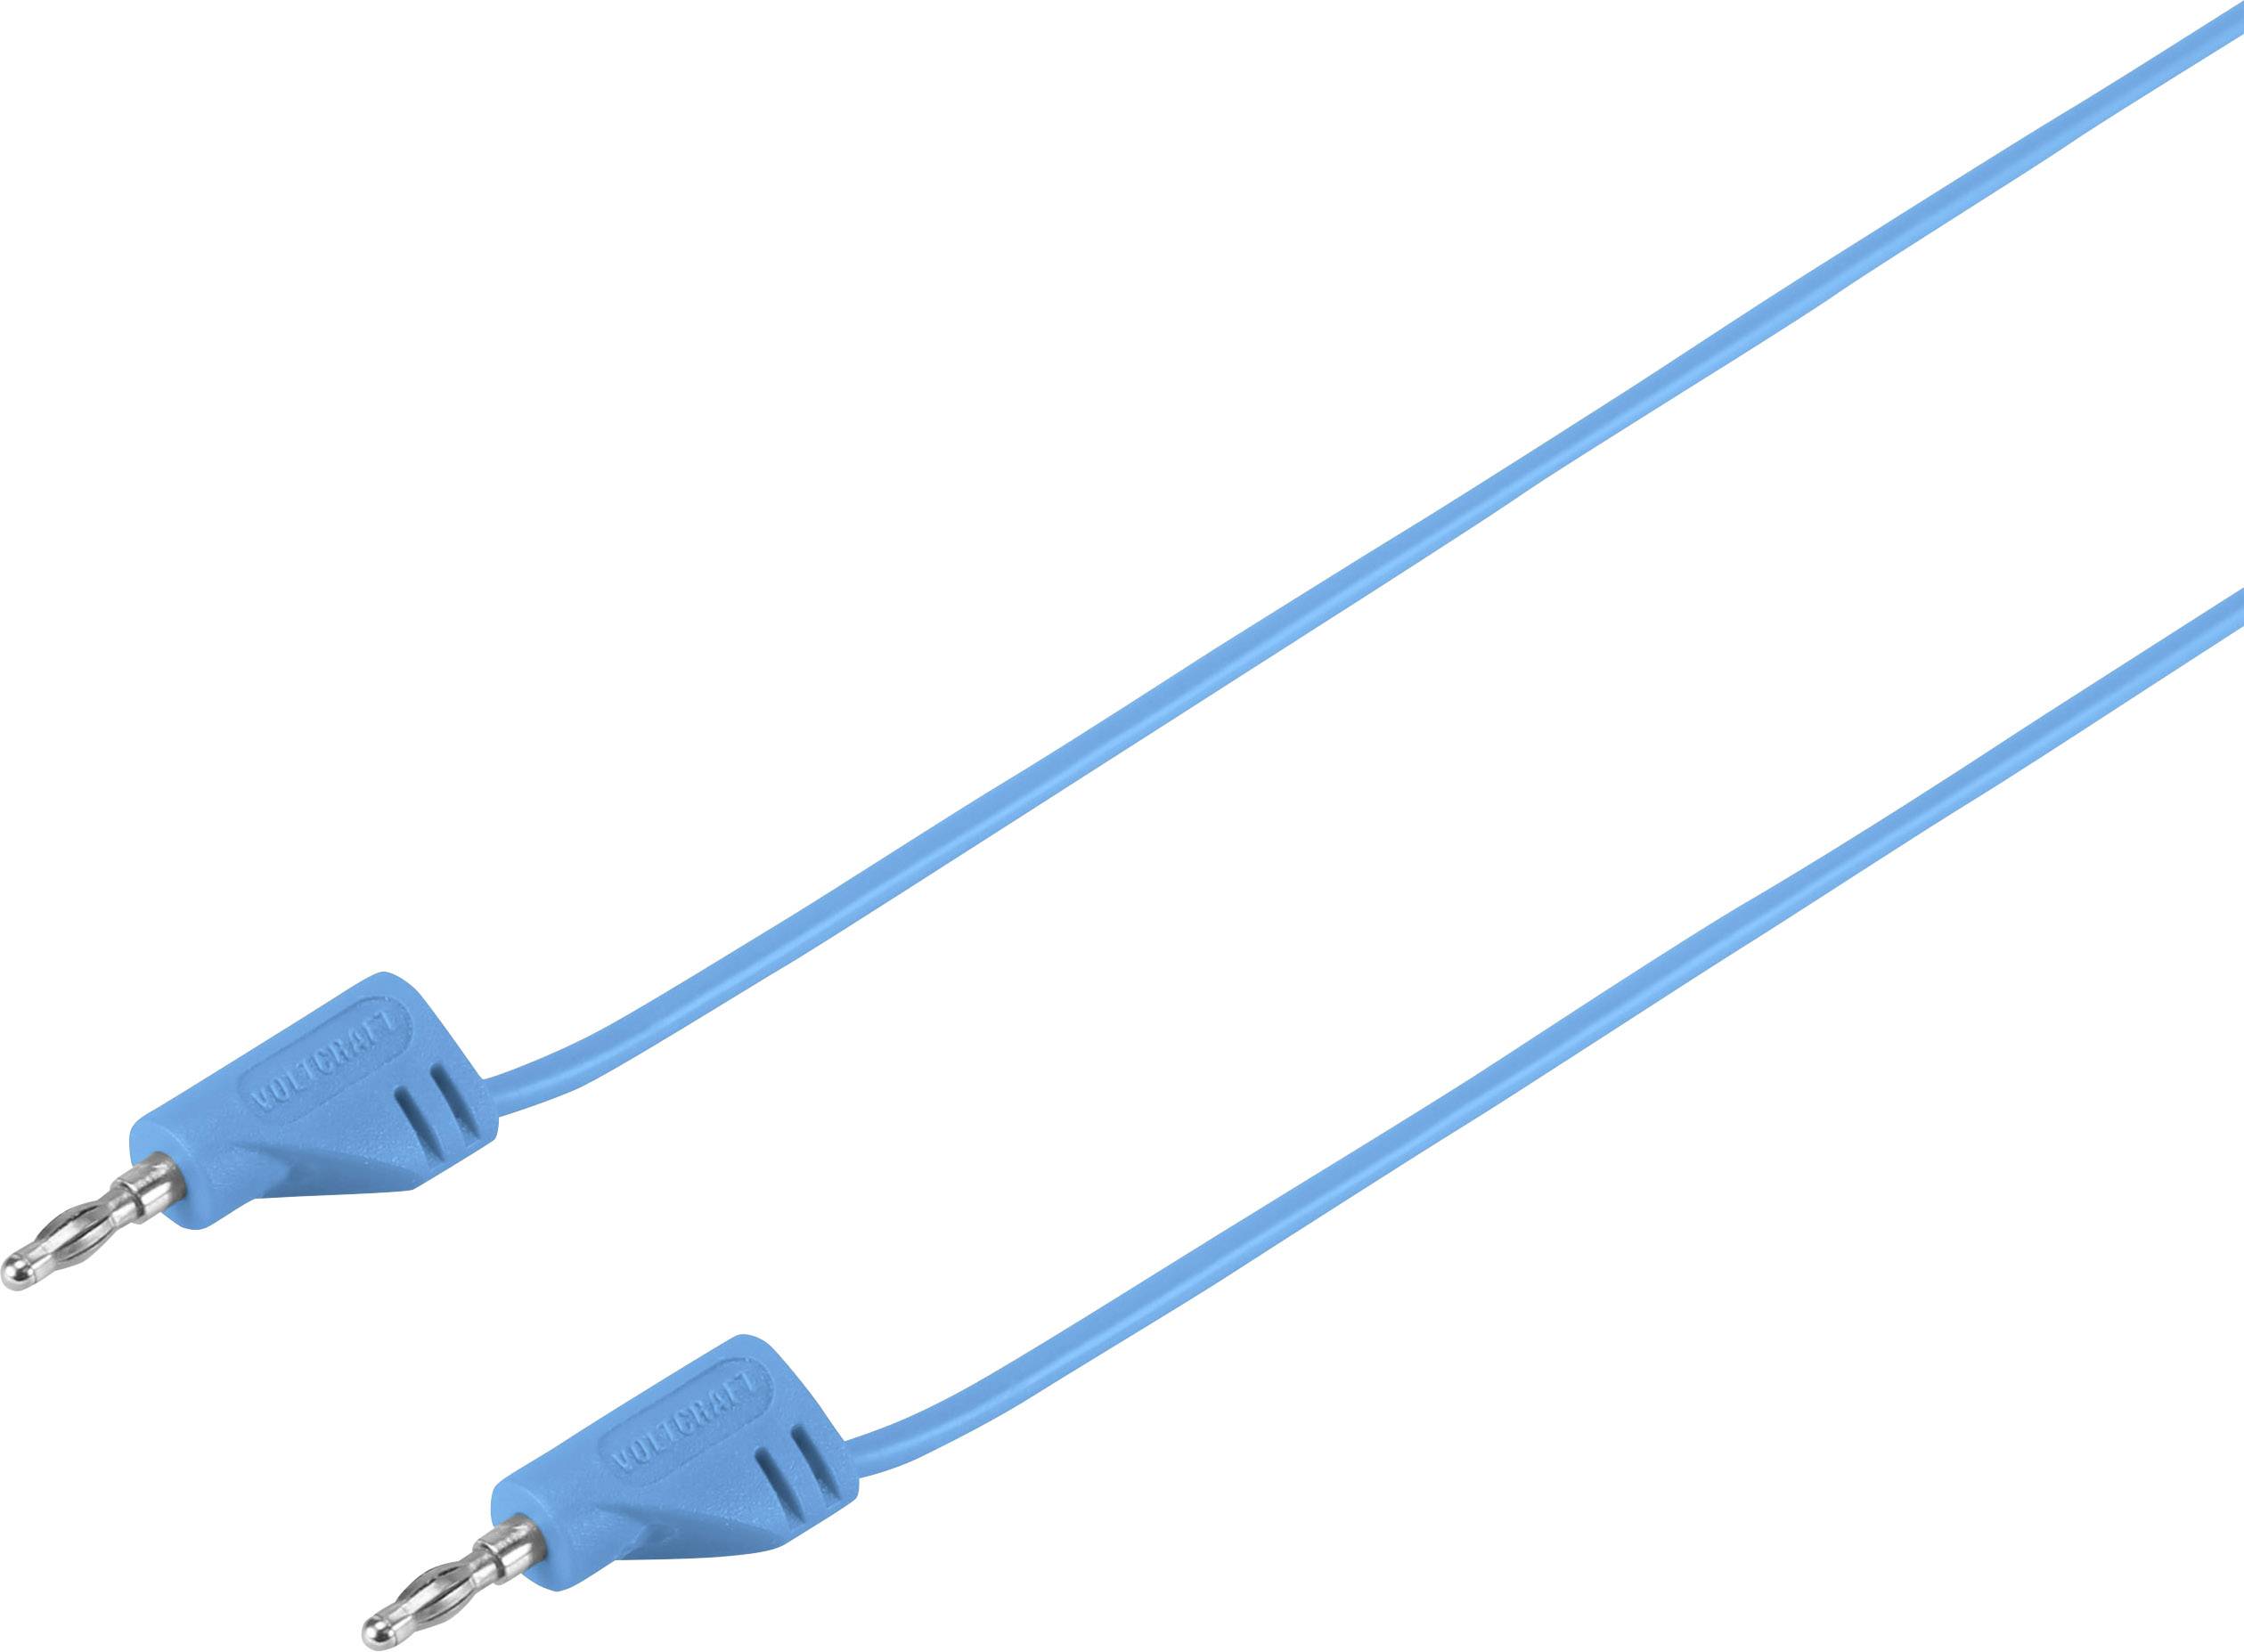 VOLTCRAFT Hochflexible Messleitung [Lamellenstecker 2 mm - Lamellenstecker 2 mm] 0.9 m Blue MSB-200